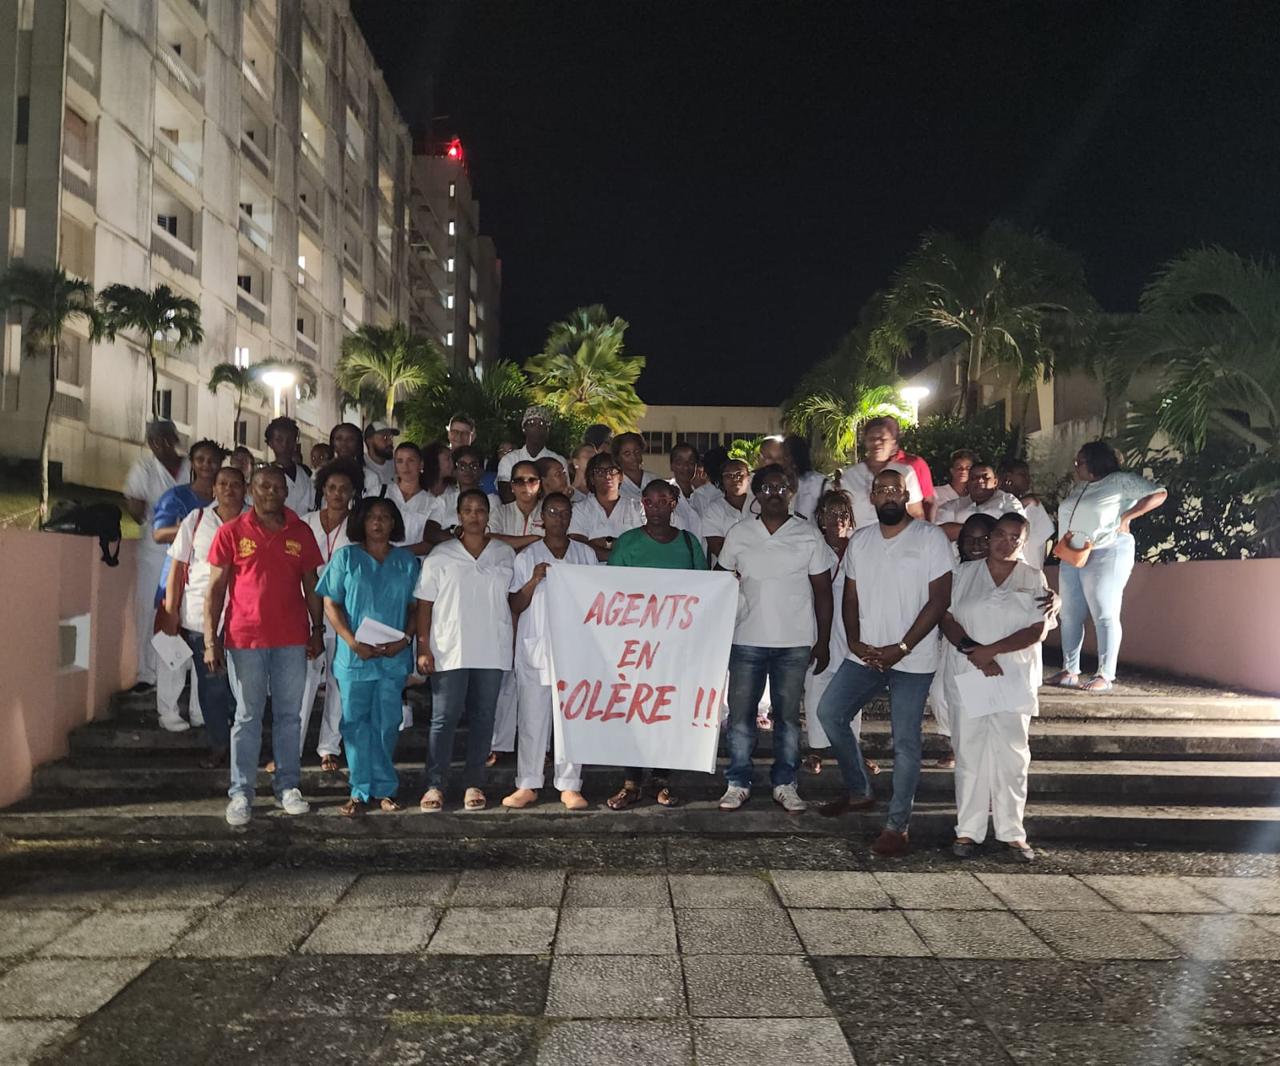     Les agents de nuit du CHU de Martinique mobilisés 

